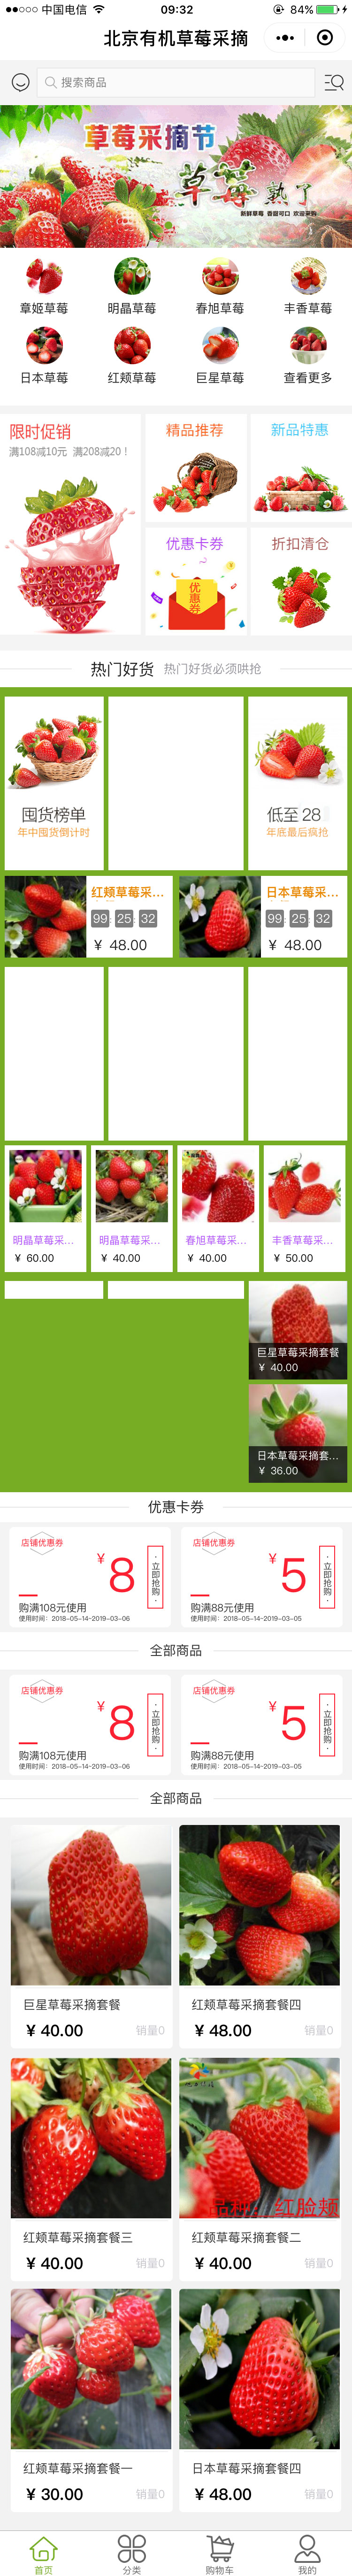 果蔬绿色北京—北京有机草莓采摘商城小程序高级版.jpg